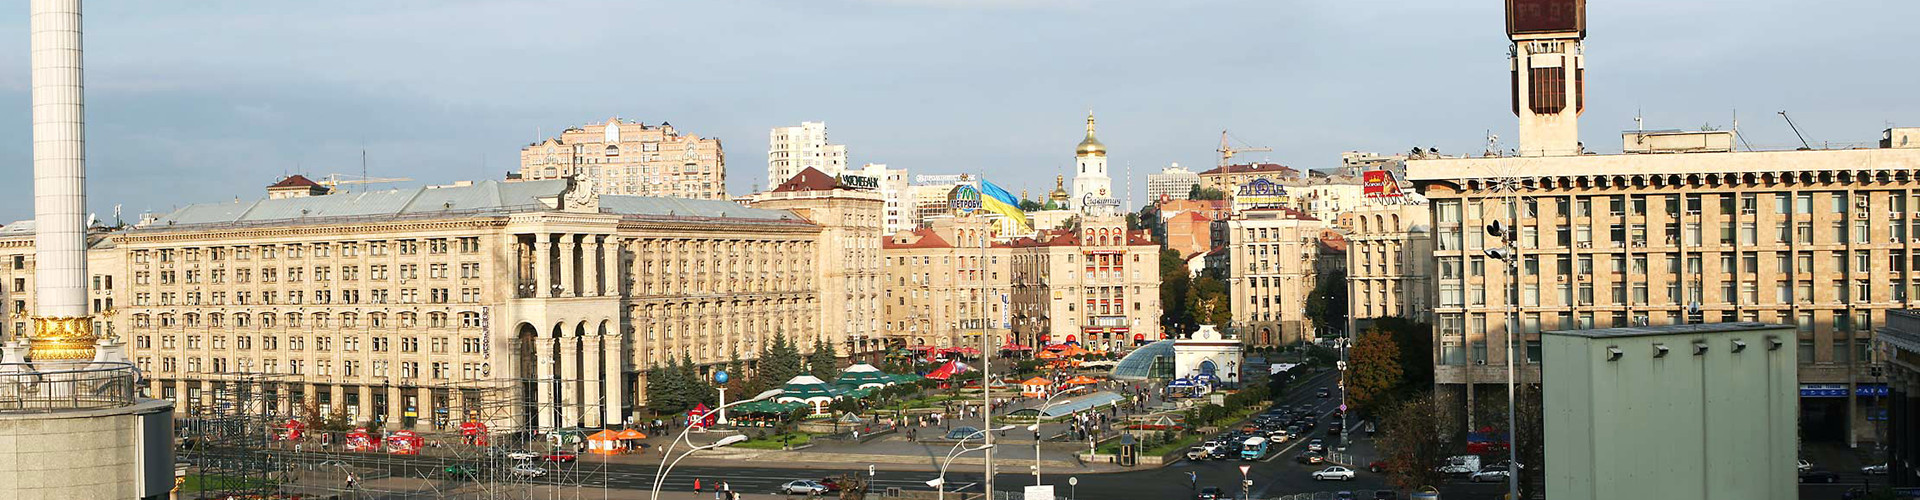 Kiev real estate>